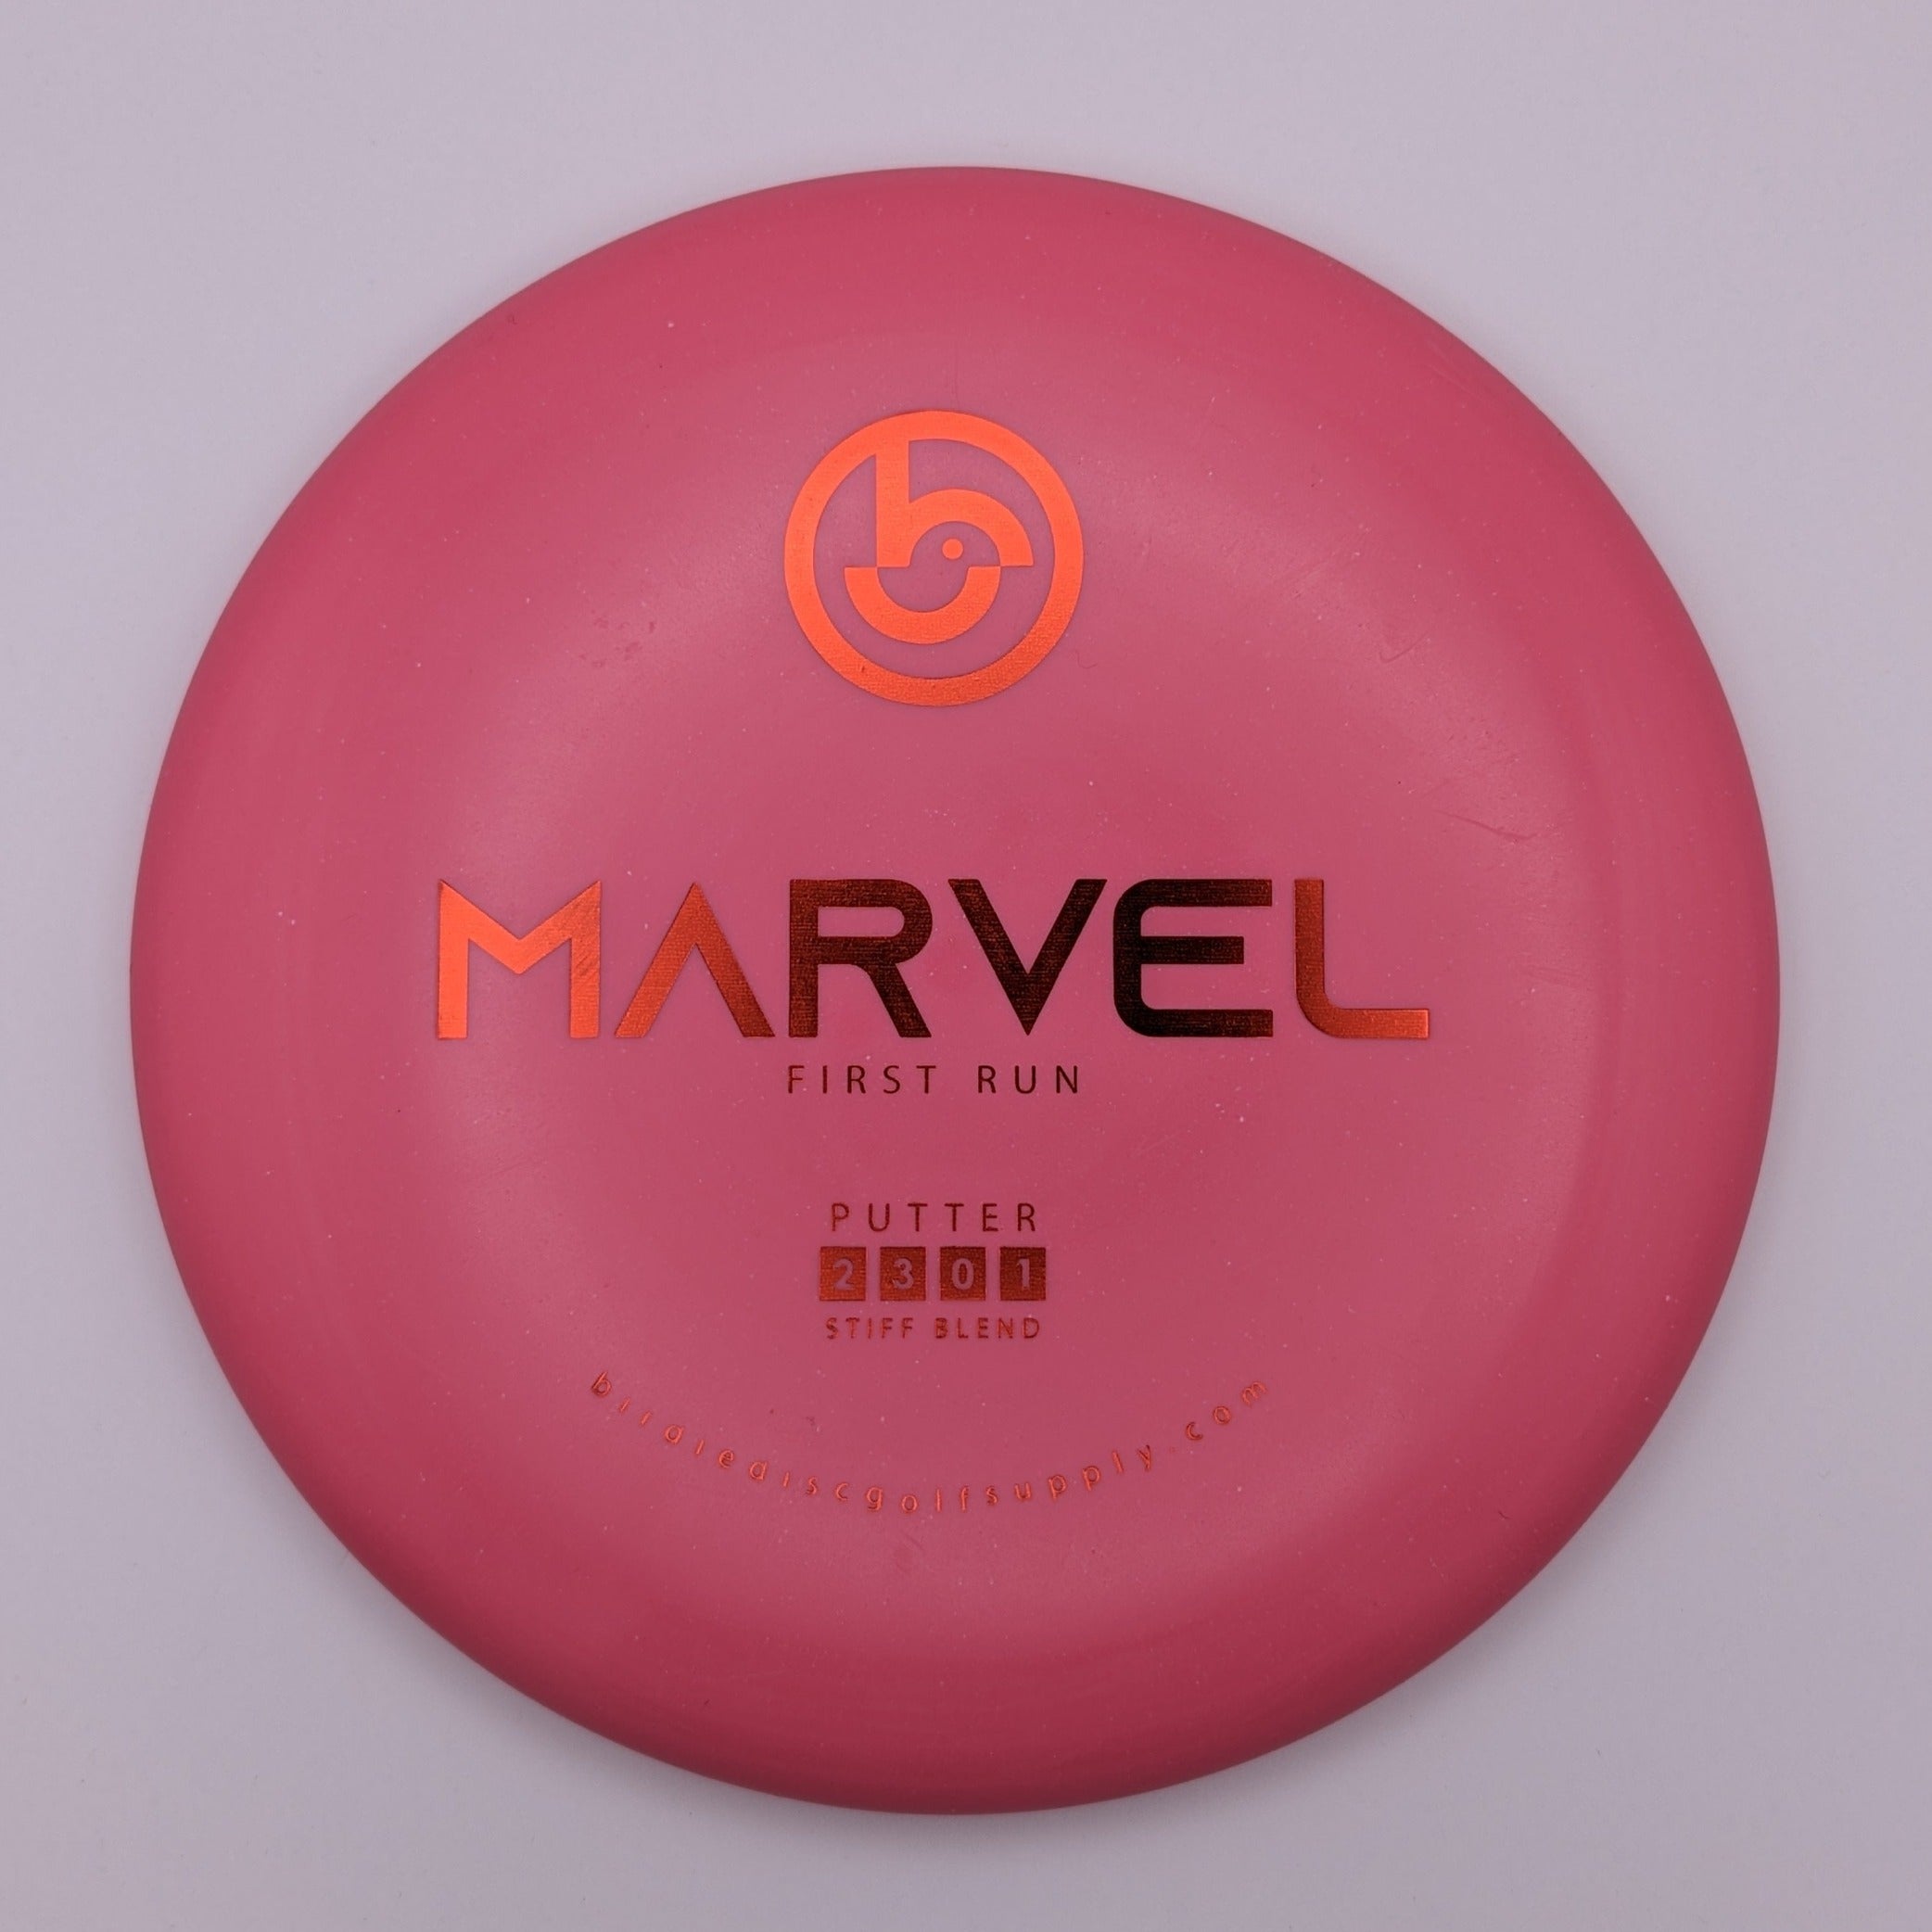 BIRDIE DISC GOLF SUPPLY CO. Putt & Approach Marvel Stiff Blend Pink